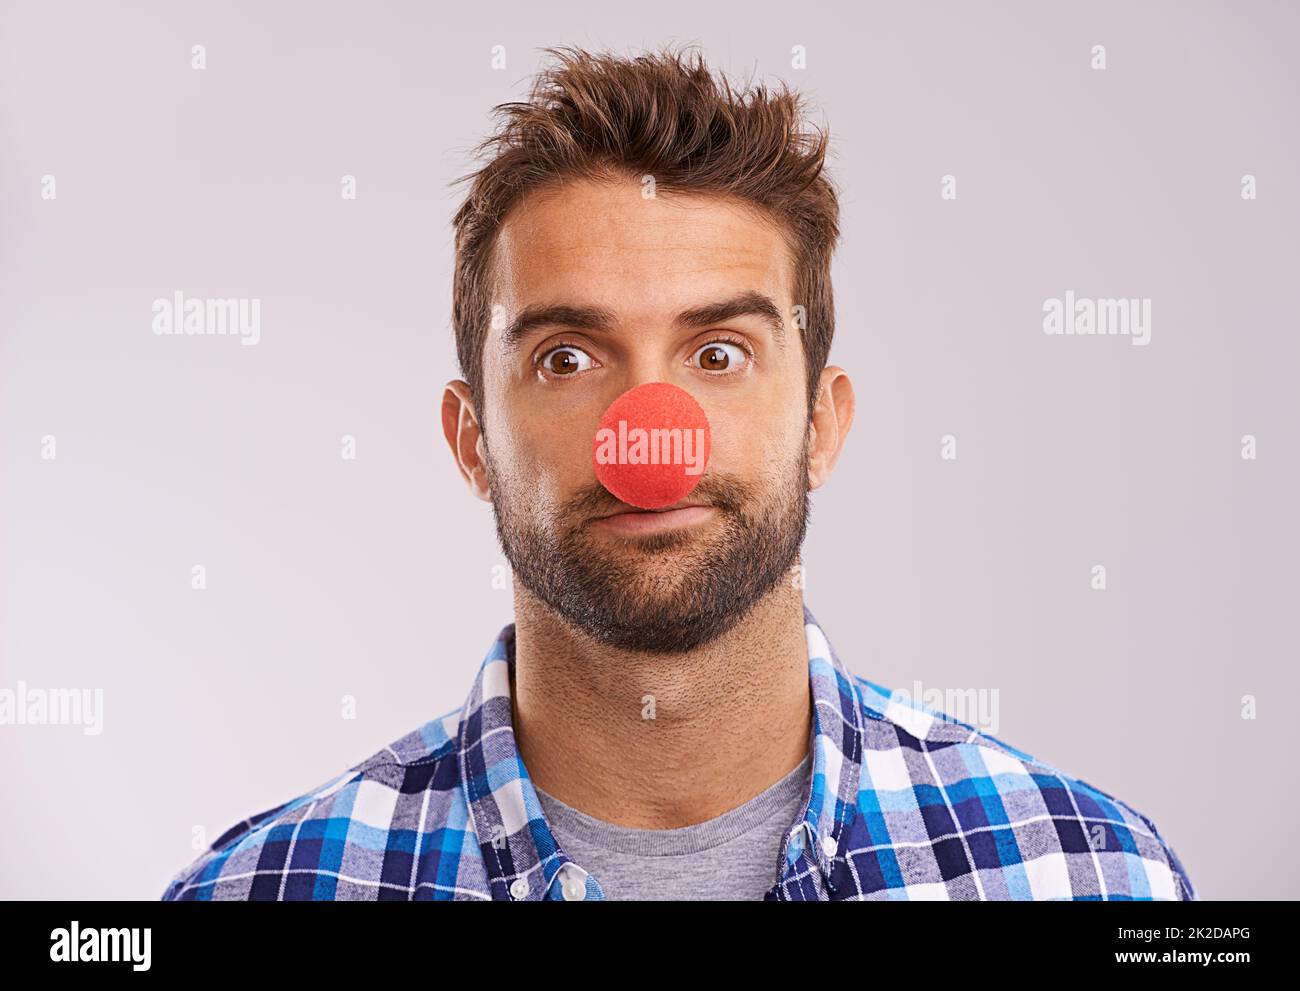 Rudolph n'est pas disponible, alors il ne vous reste pas à guider votre traîneau. Photo studio d'un beau homme portant un nez rouge sur fond gris. Banque D'Images